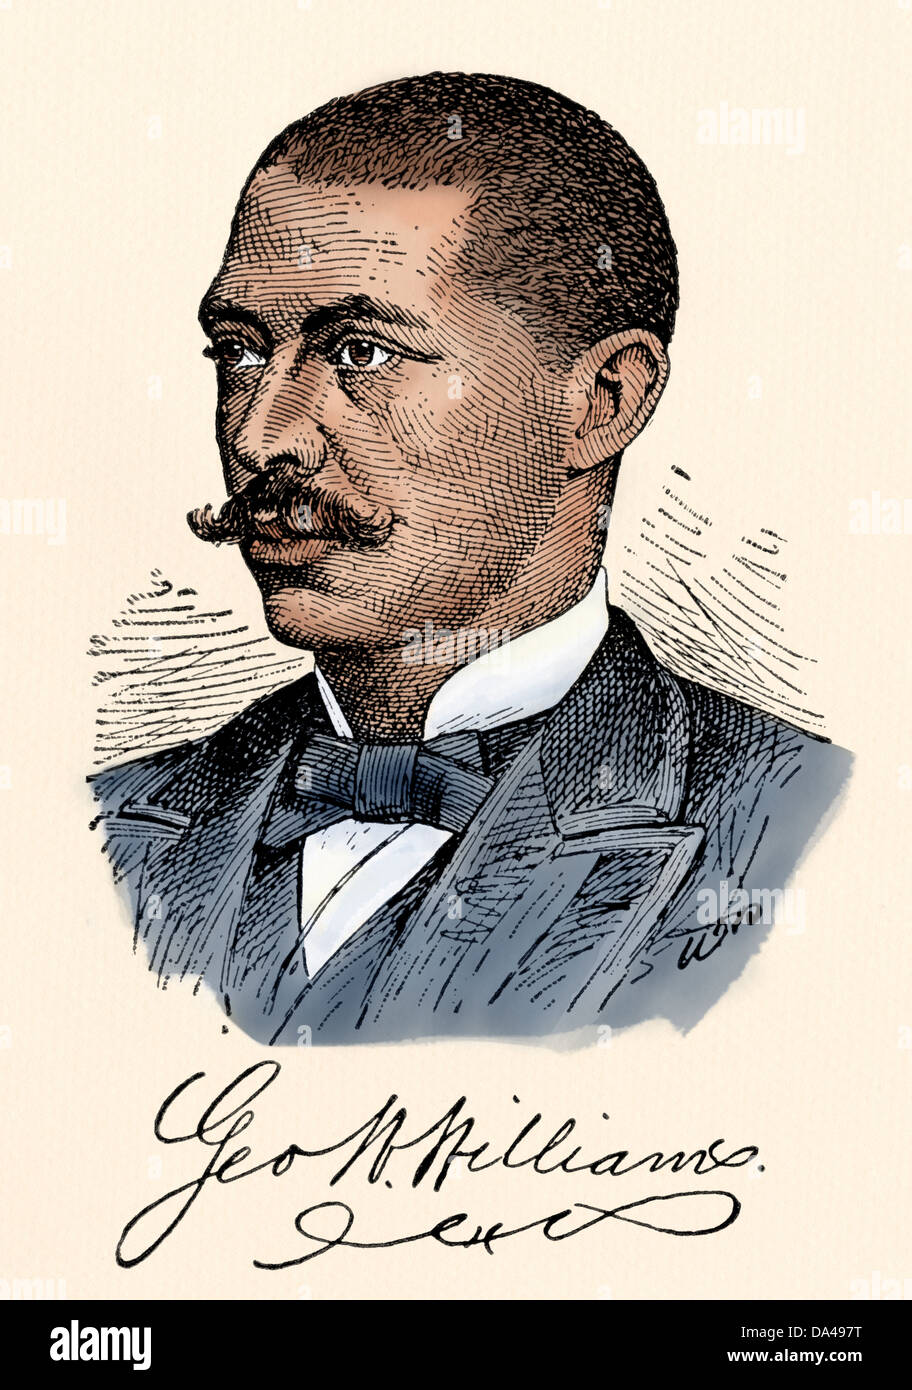 Auteur George Washington Williams, avec sa signature. Gravure sur bois couleur numérique Banque D'Images